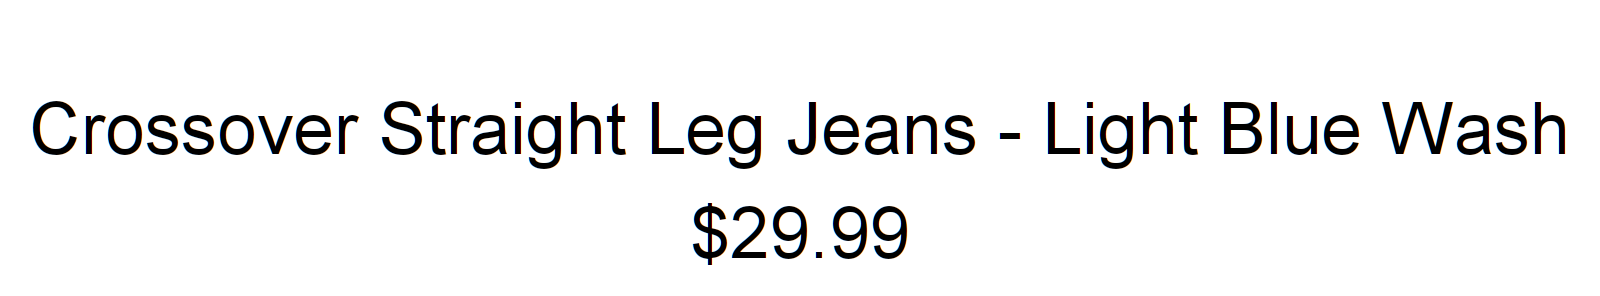 Like Me Better Jumpsuit - Cognac $26.99 